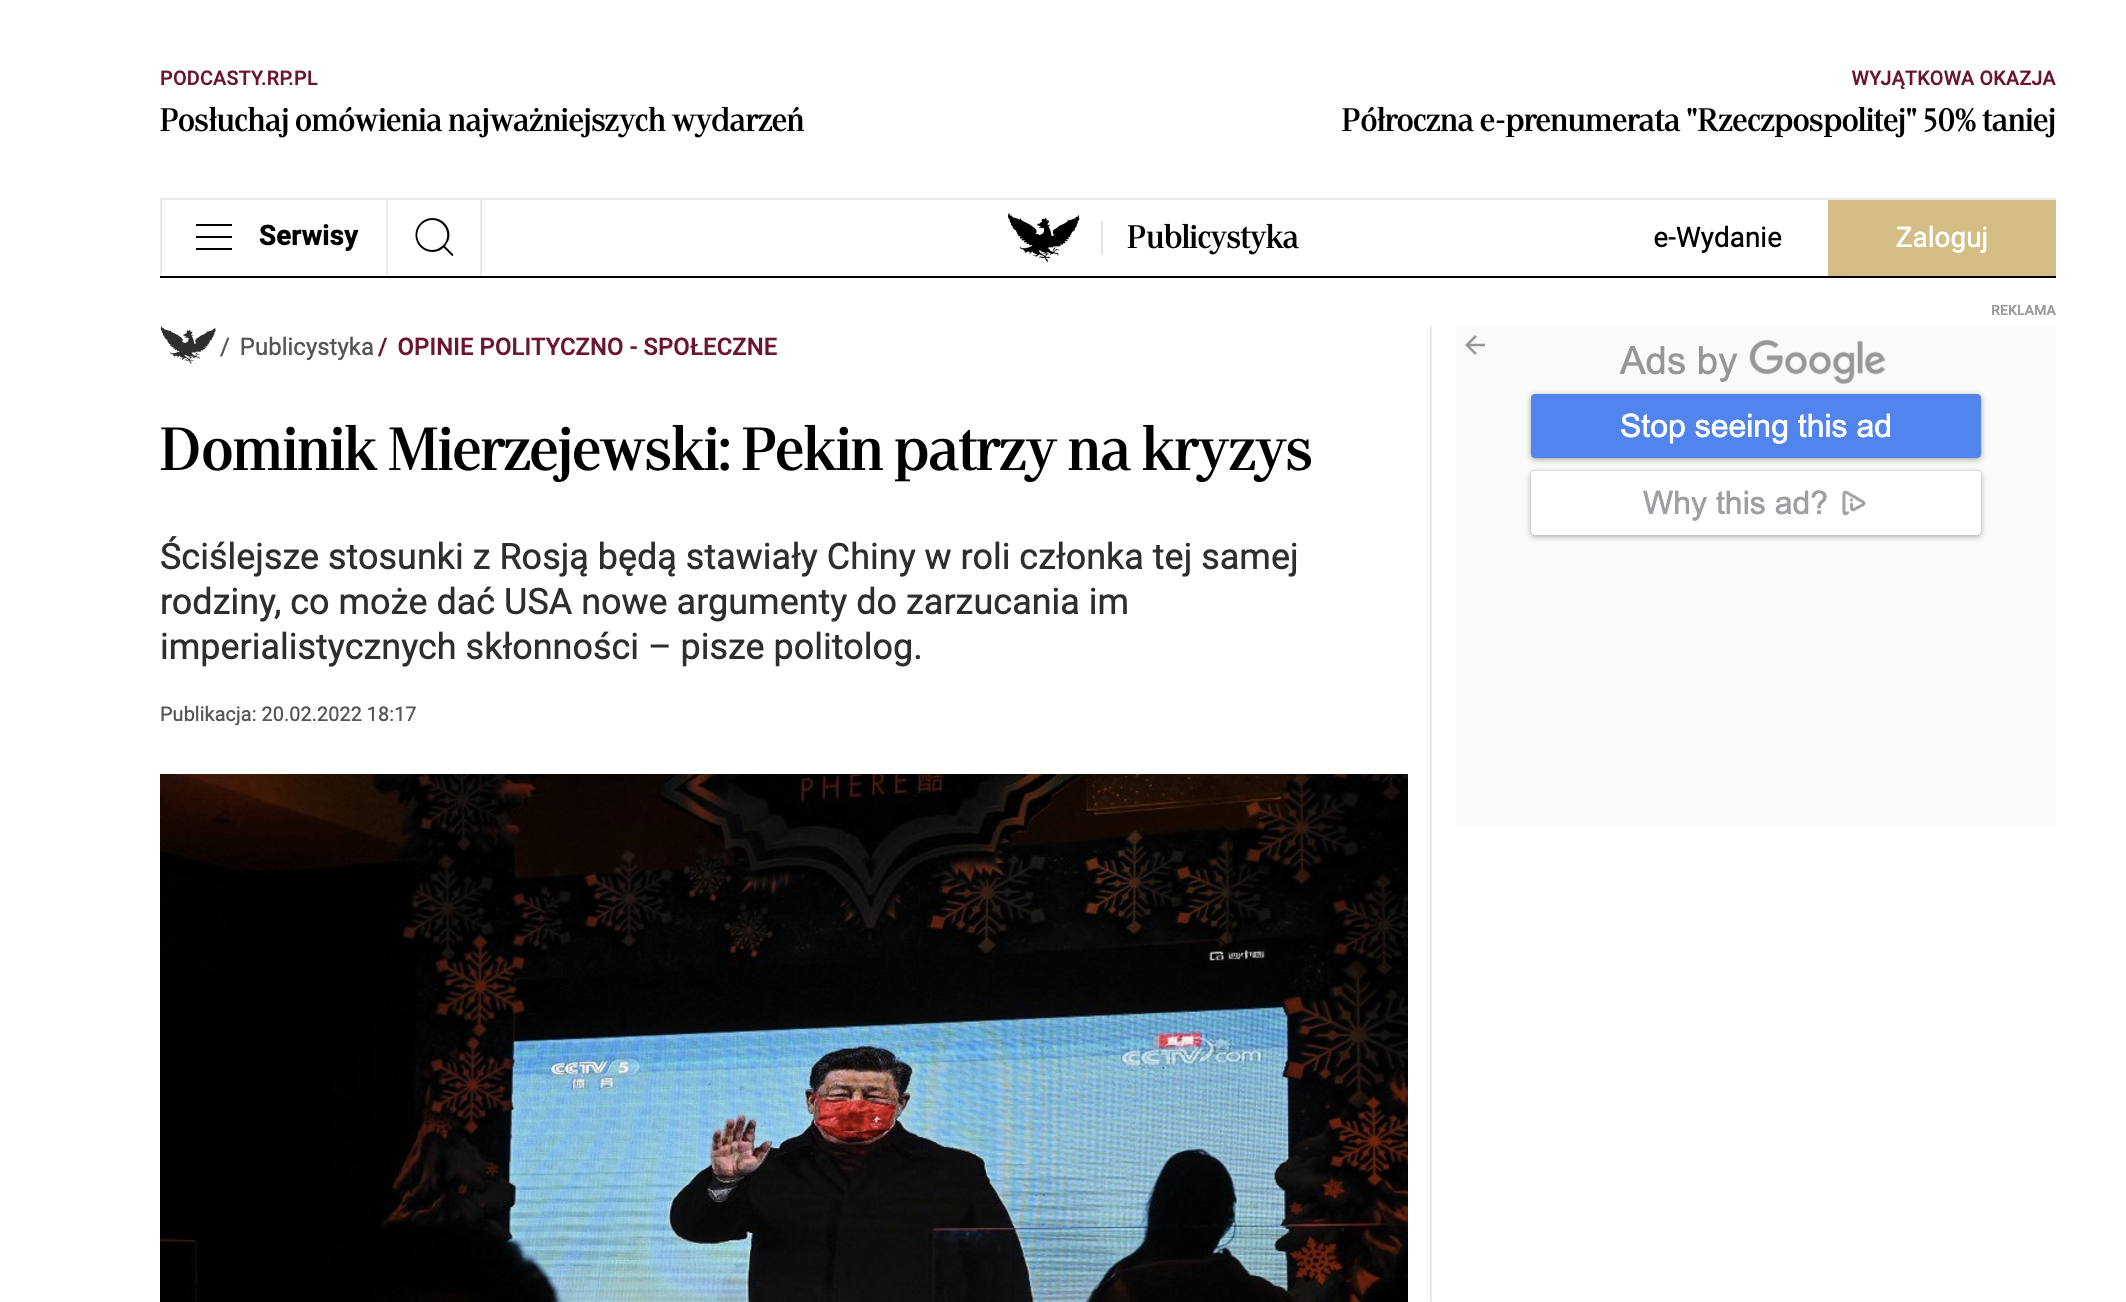 Zrzut ekranu artykułu w gazecie Rzeczpospolita/Screenshot of an article in the Rzeczpospolita newspaper